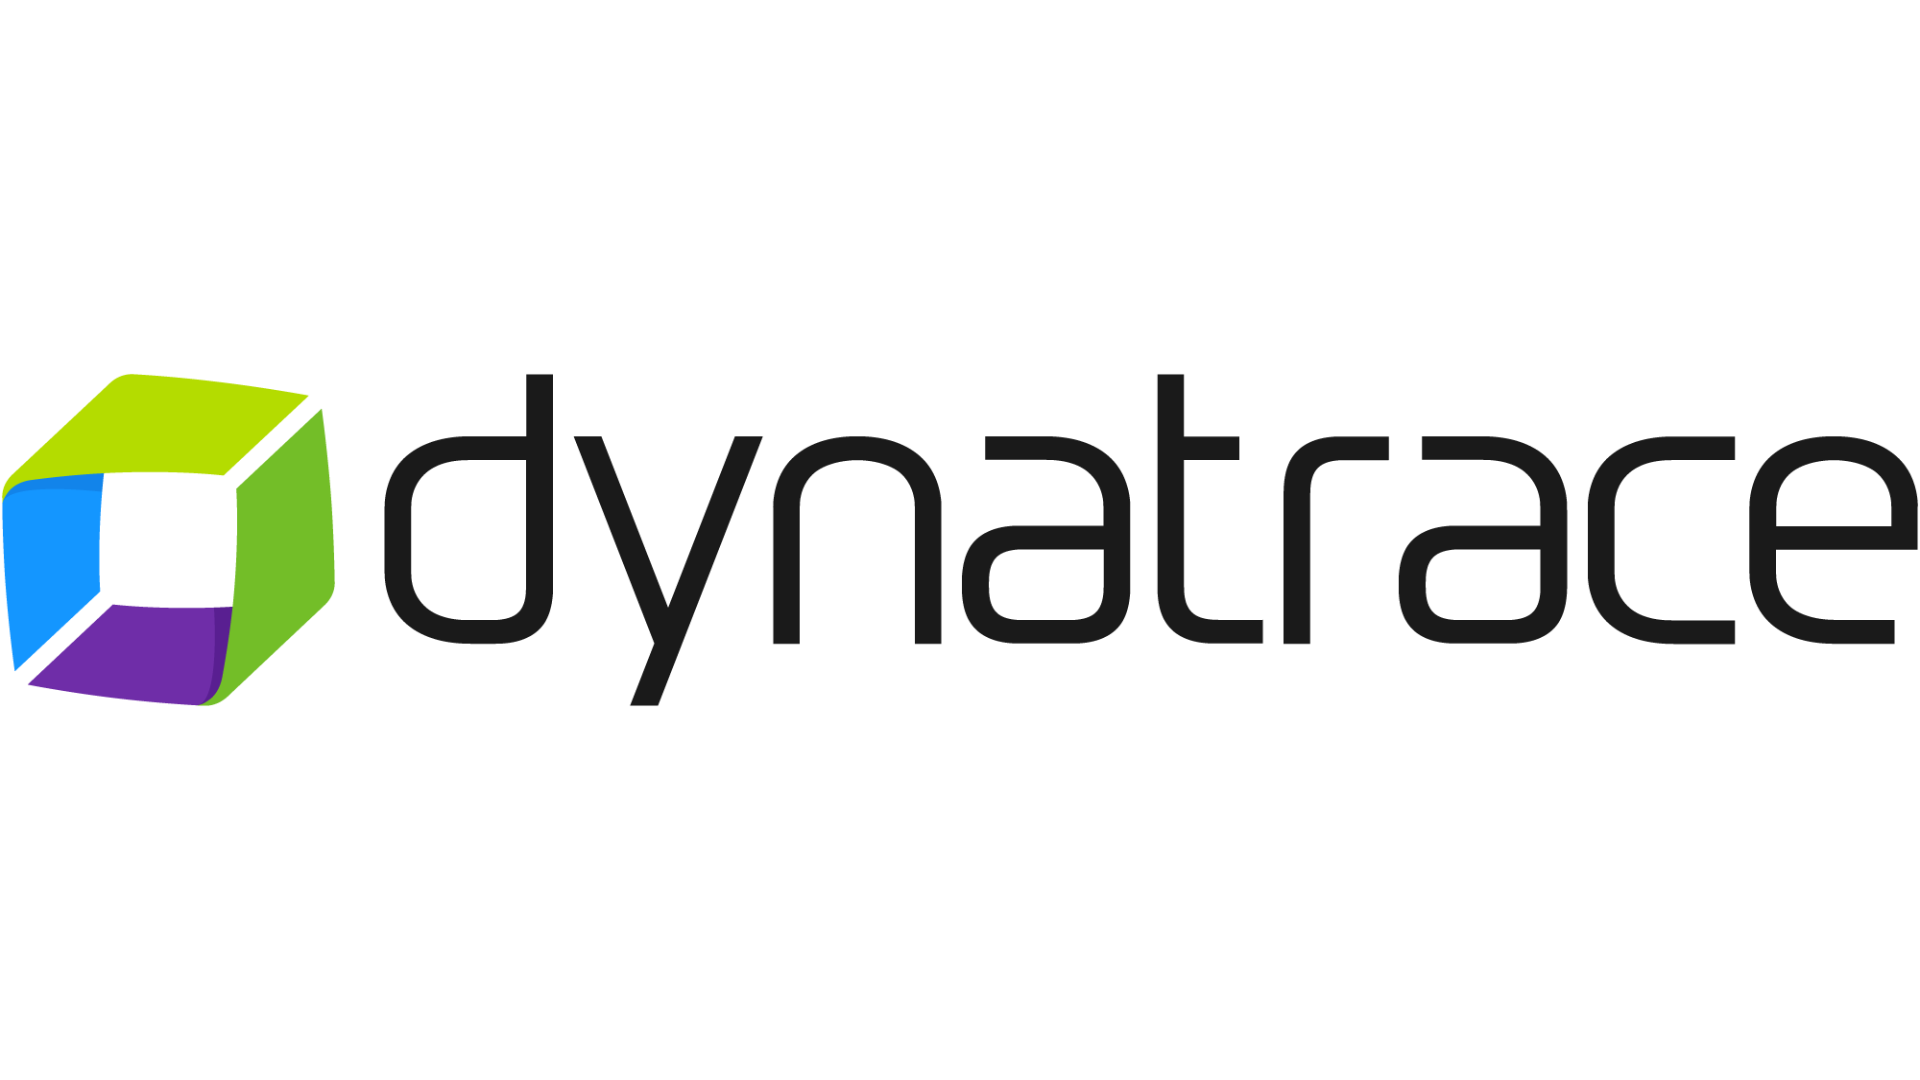 コンピュータシステムパフォーマンス管理のアイ・アイ・エム<br>次世代アプリケーション・パフォーマンス管理サービス<br>「Dynatrace」SaaSバージョン販売開始